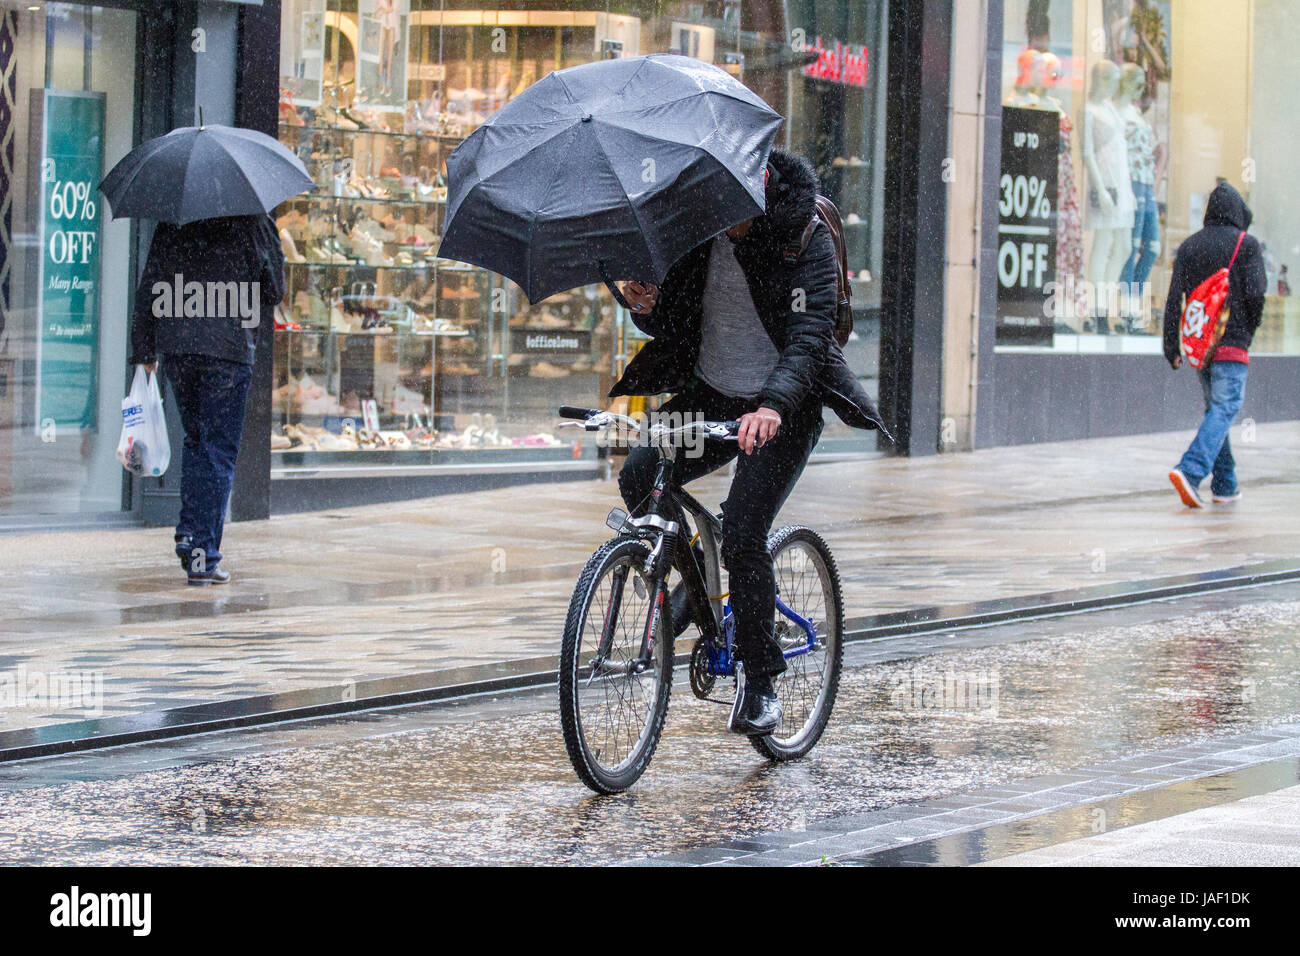 Ein Radfahrer Regen Regen Wetter Winter winterliche in Strömen getränkt uk  England britisches Englisch Regenschirm Regenschirme kalten nassen person  Duschen nass Regentropfen genießen Stockfotografie - Alamy